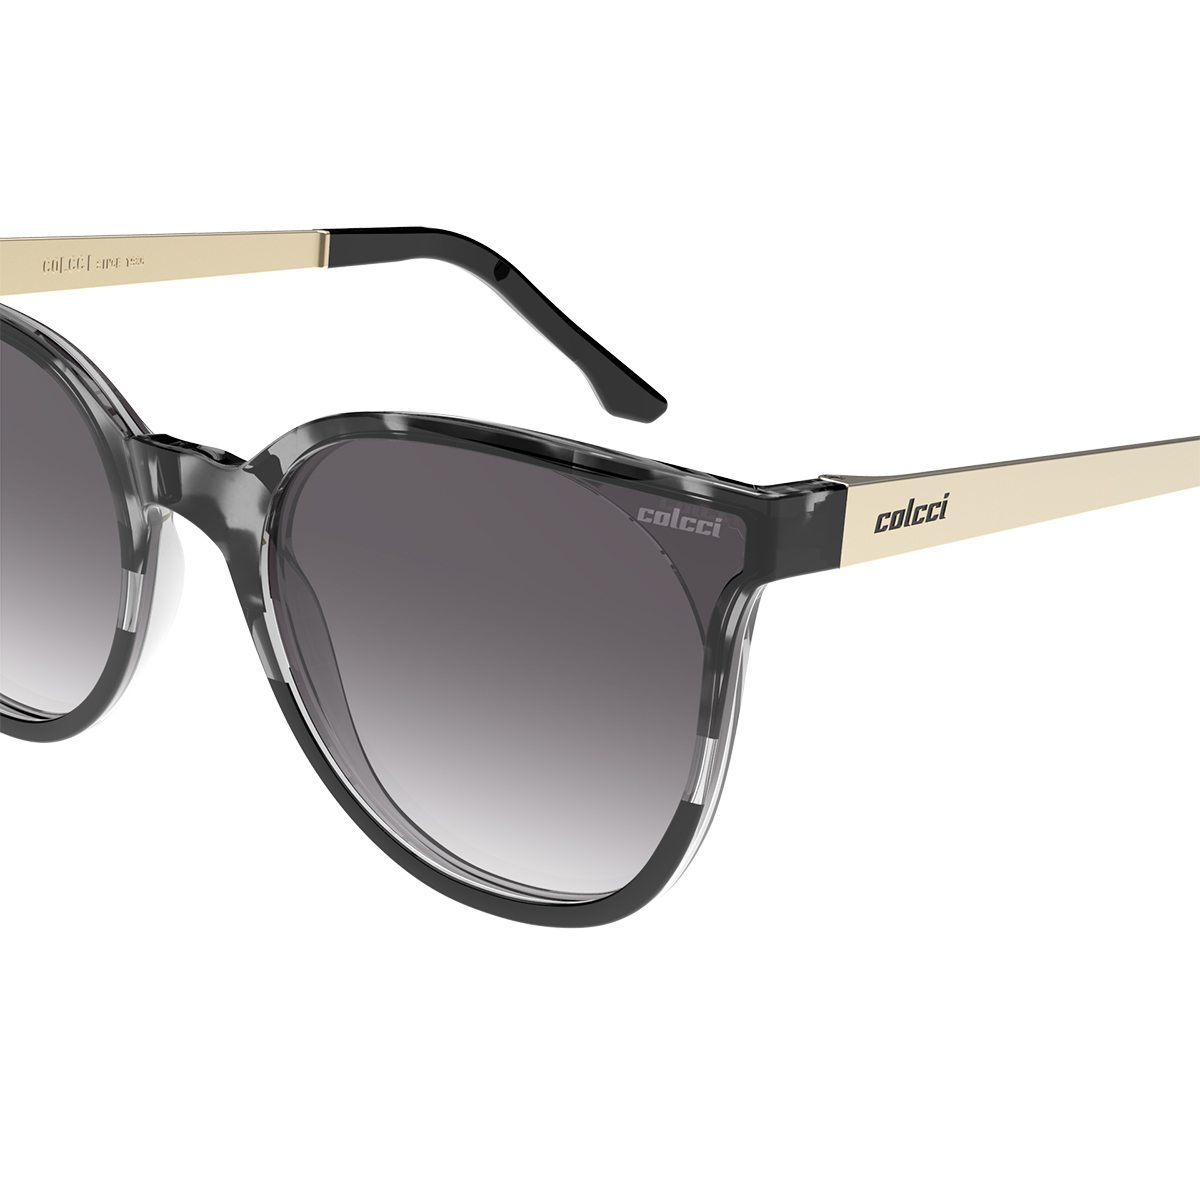 Óculos solar Colcci, designer exclusivo que revela tendências de moda que juntam conforto, elegância e modernidade